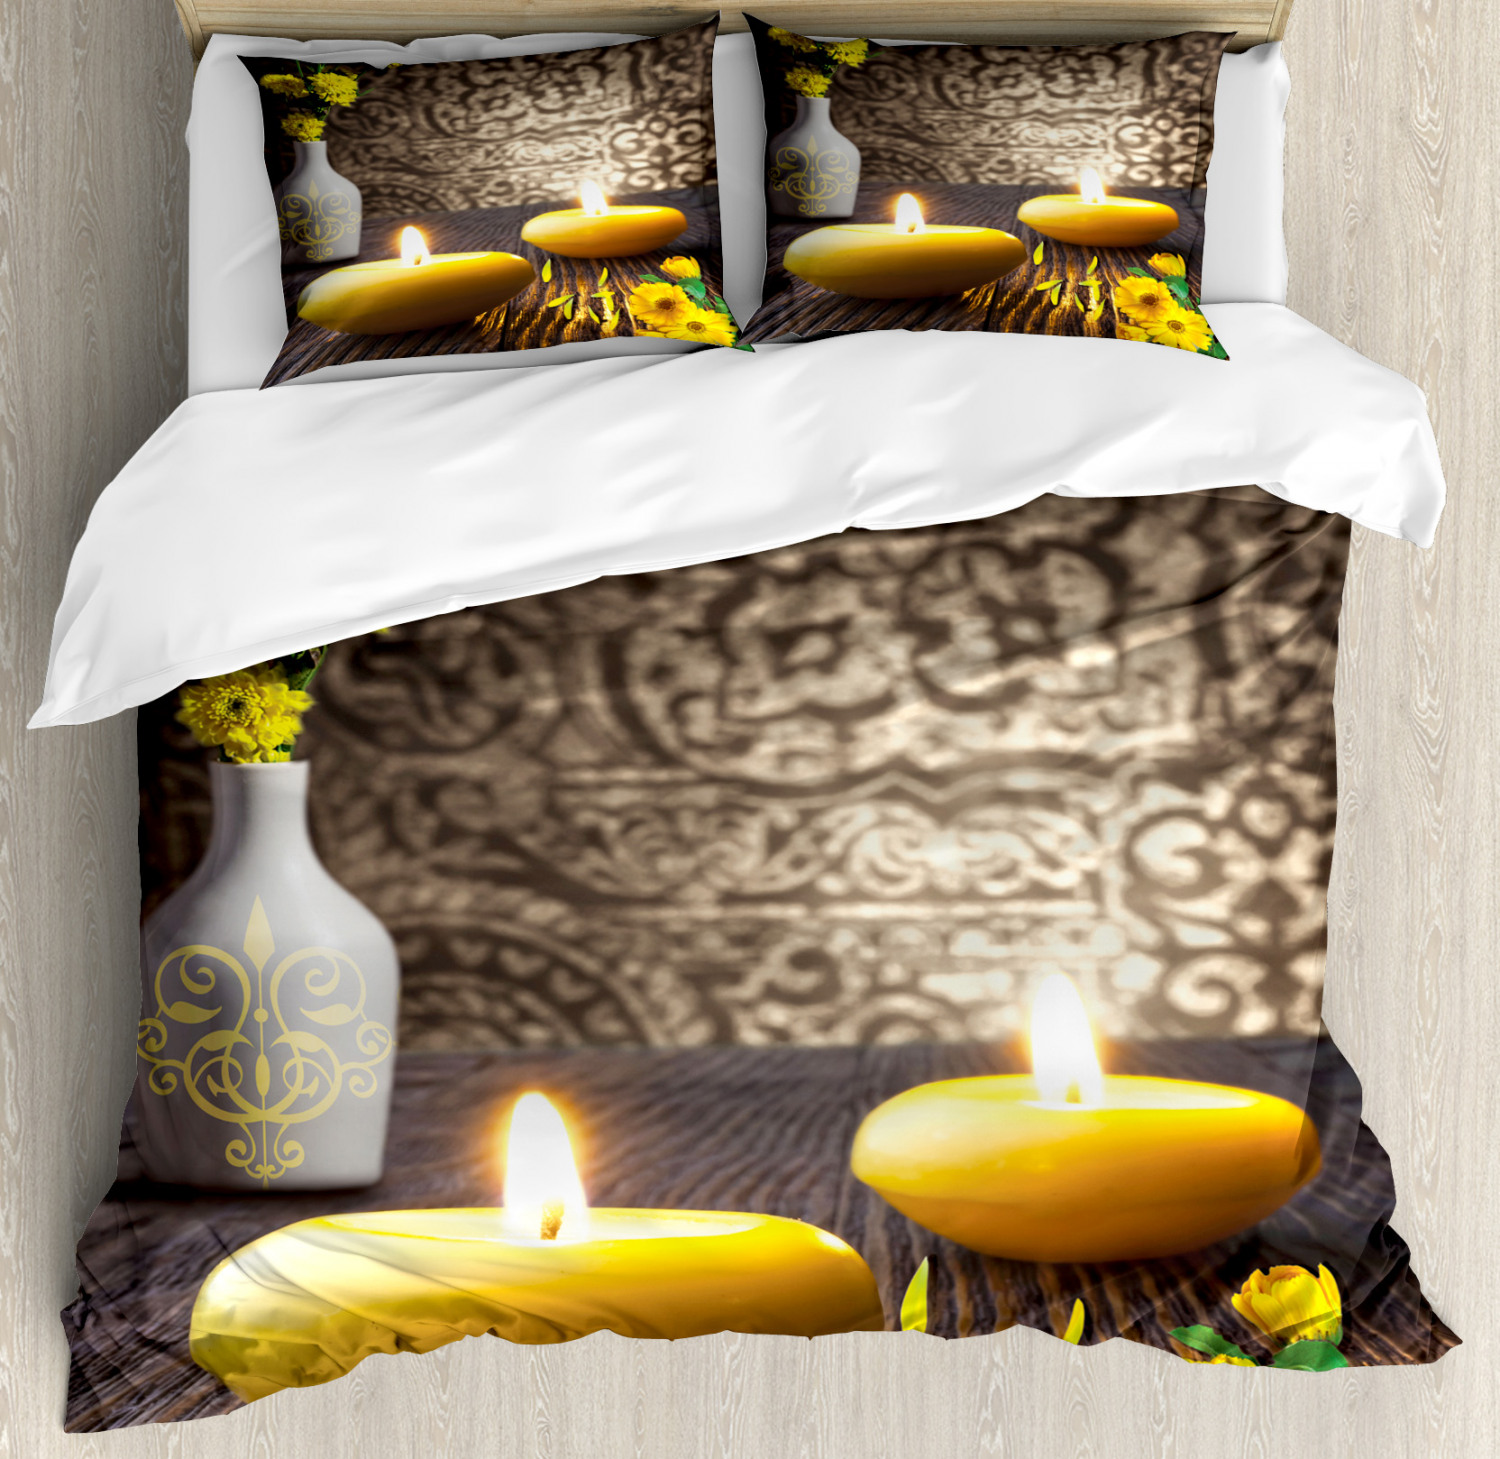 Zen Duvet Cover Set With Pillow Shams Oriental Meditative Candles